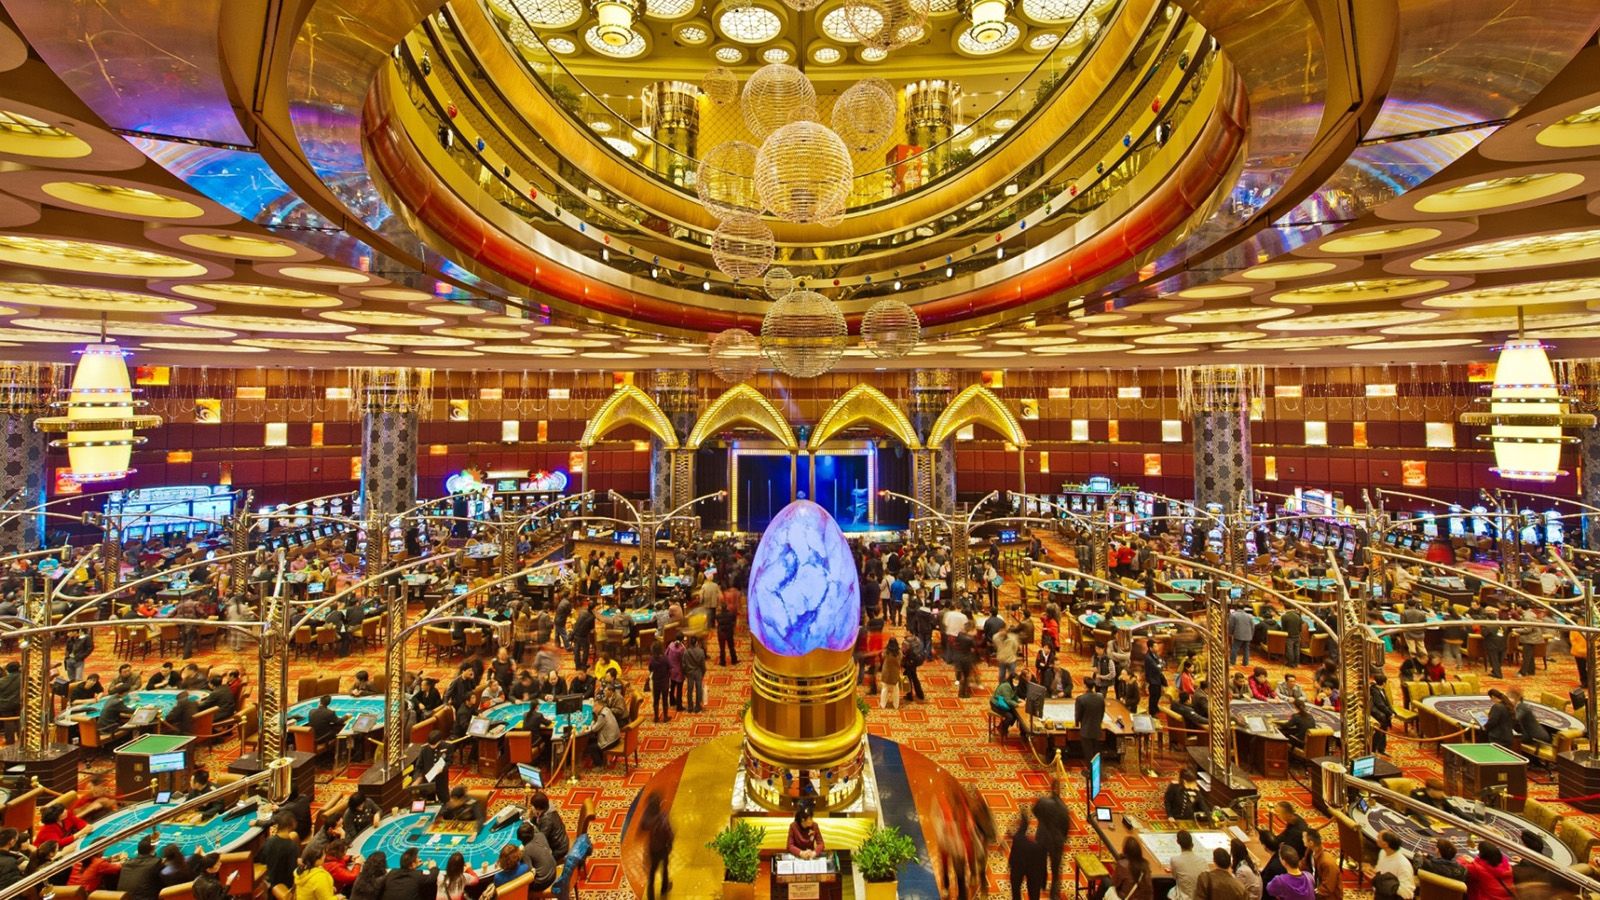 biggest casino in the world